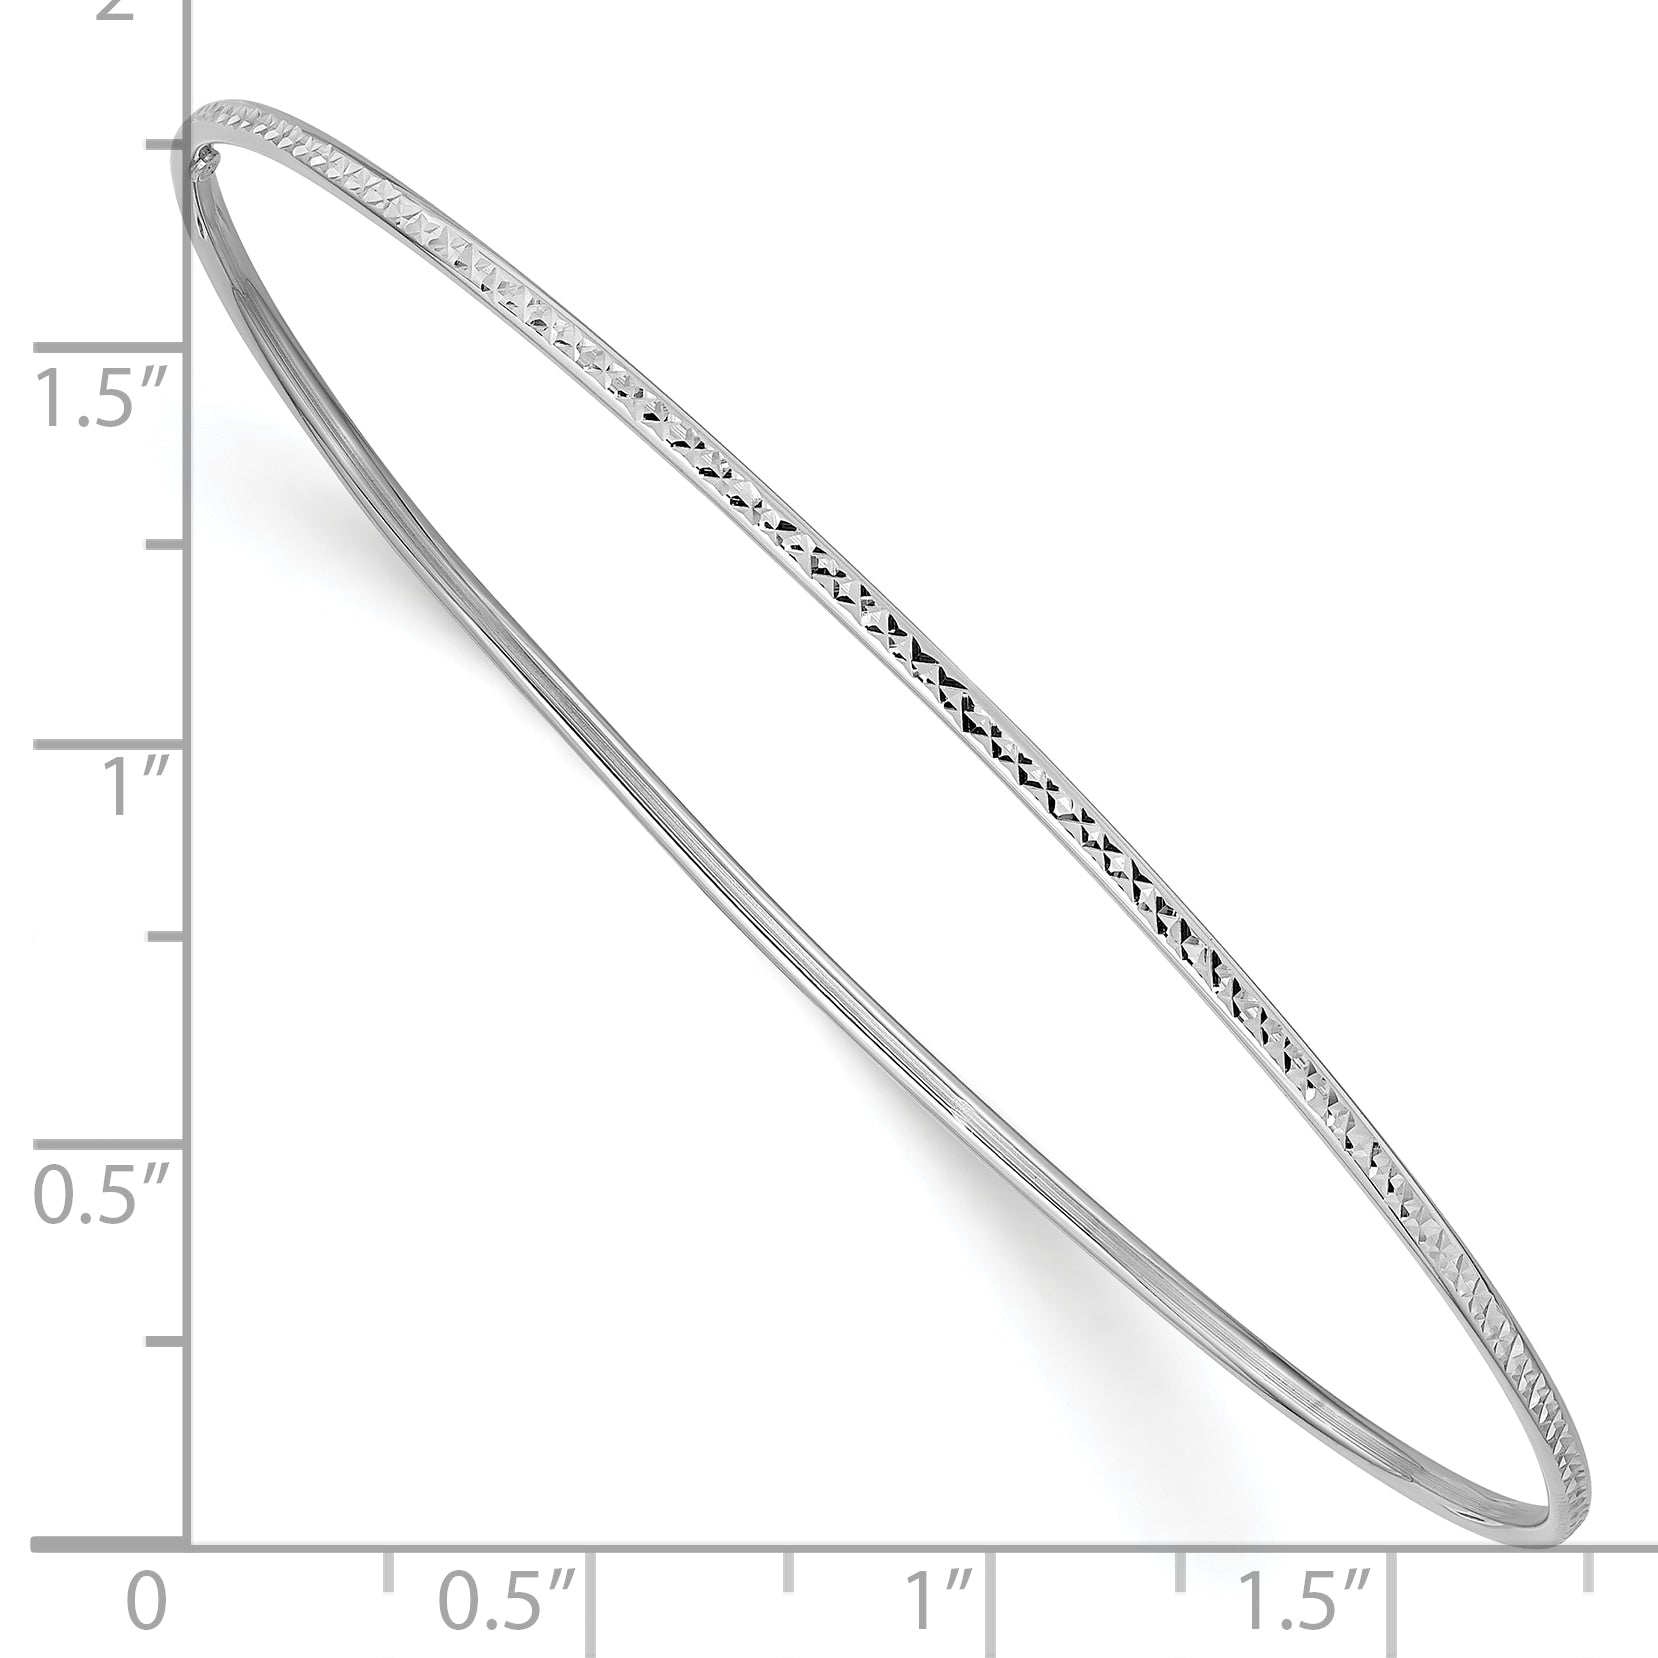 10k 1.5mm White Gold Diamond-Cut Slip-on Bangle Bracelet